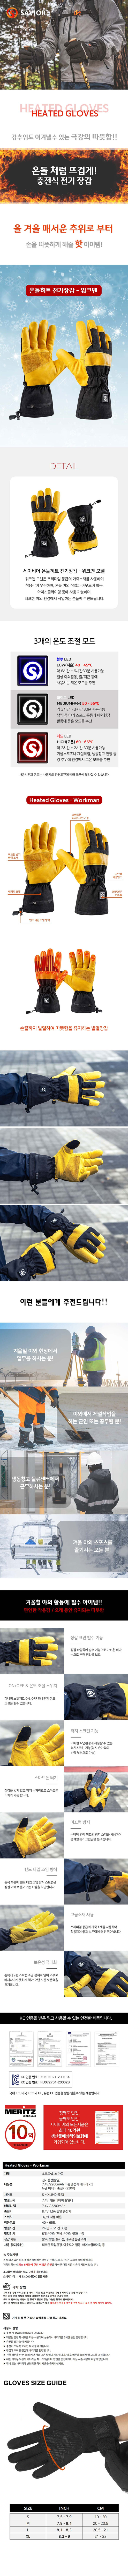 go16775_savior_heated_gloves_workman.jpg